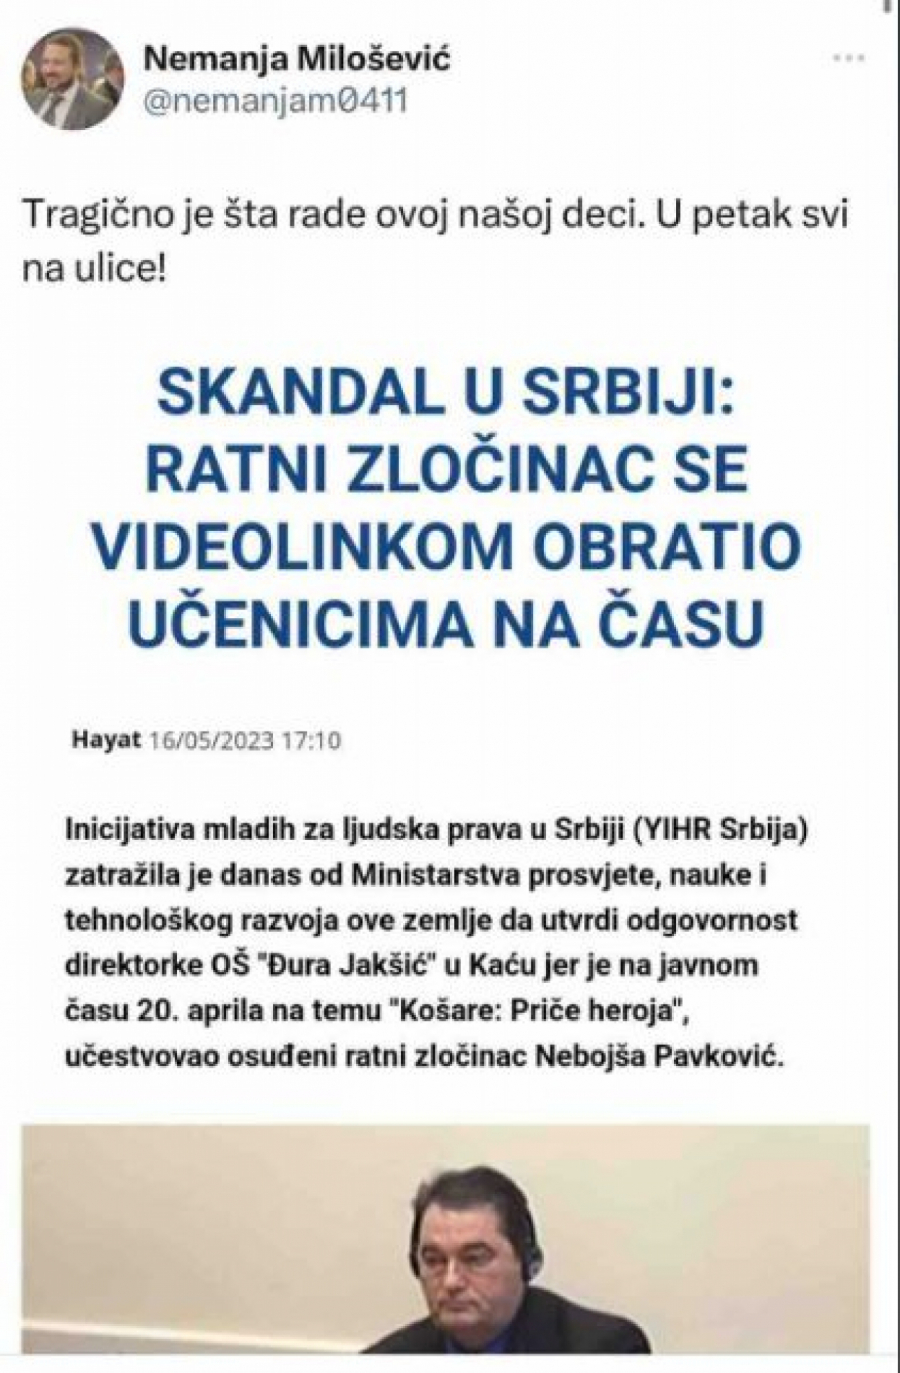 SRAMNO! Opozicija hoće da blokira Srbiju jer deca uče o bici na Košarama!